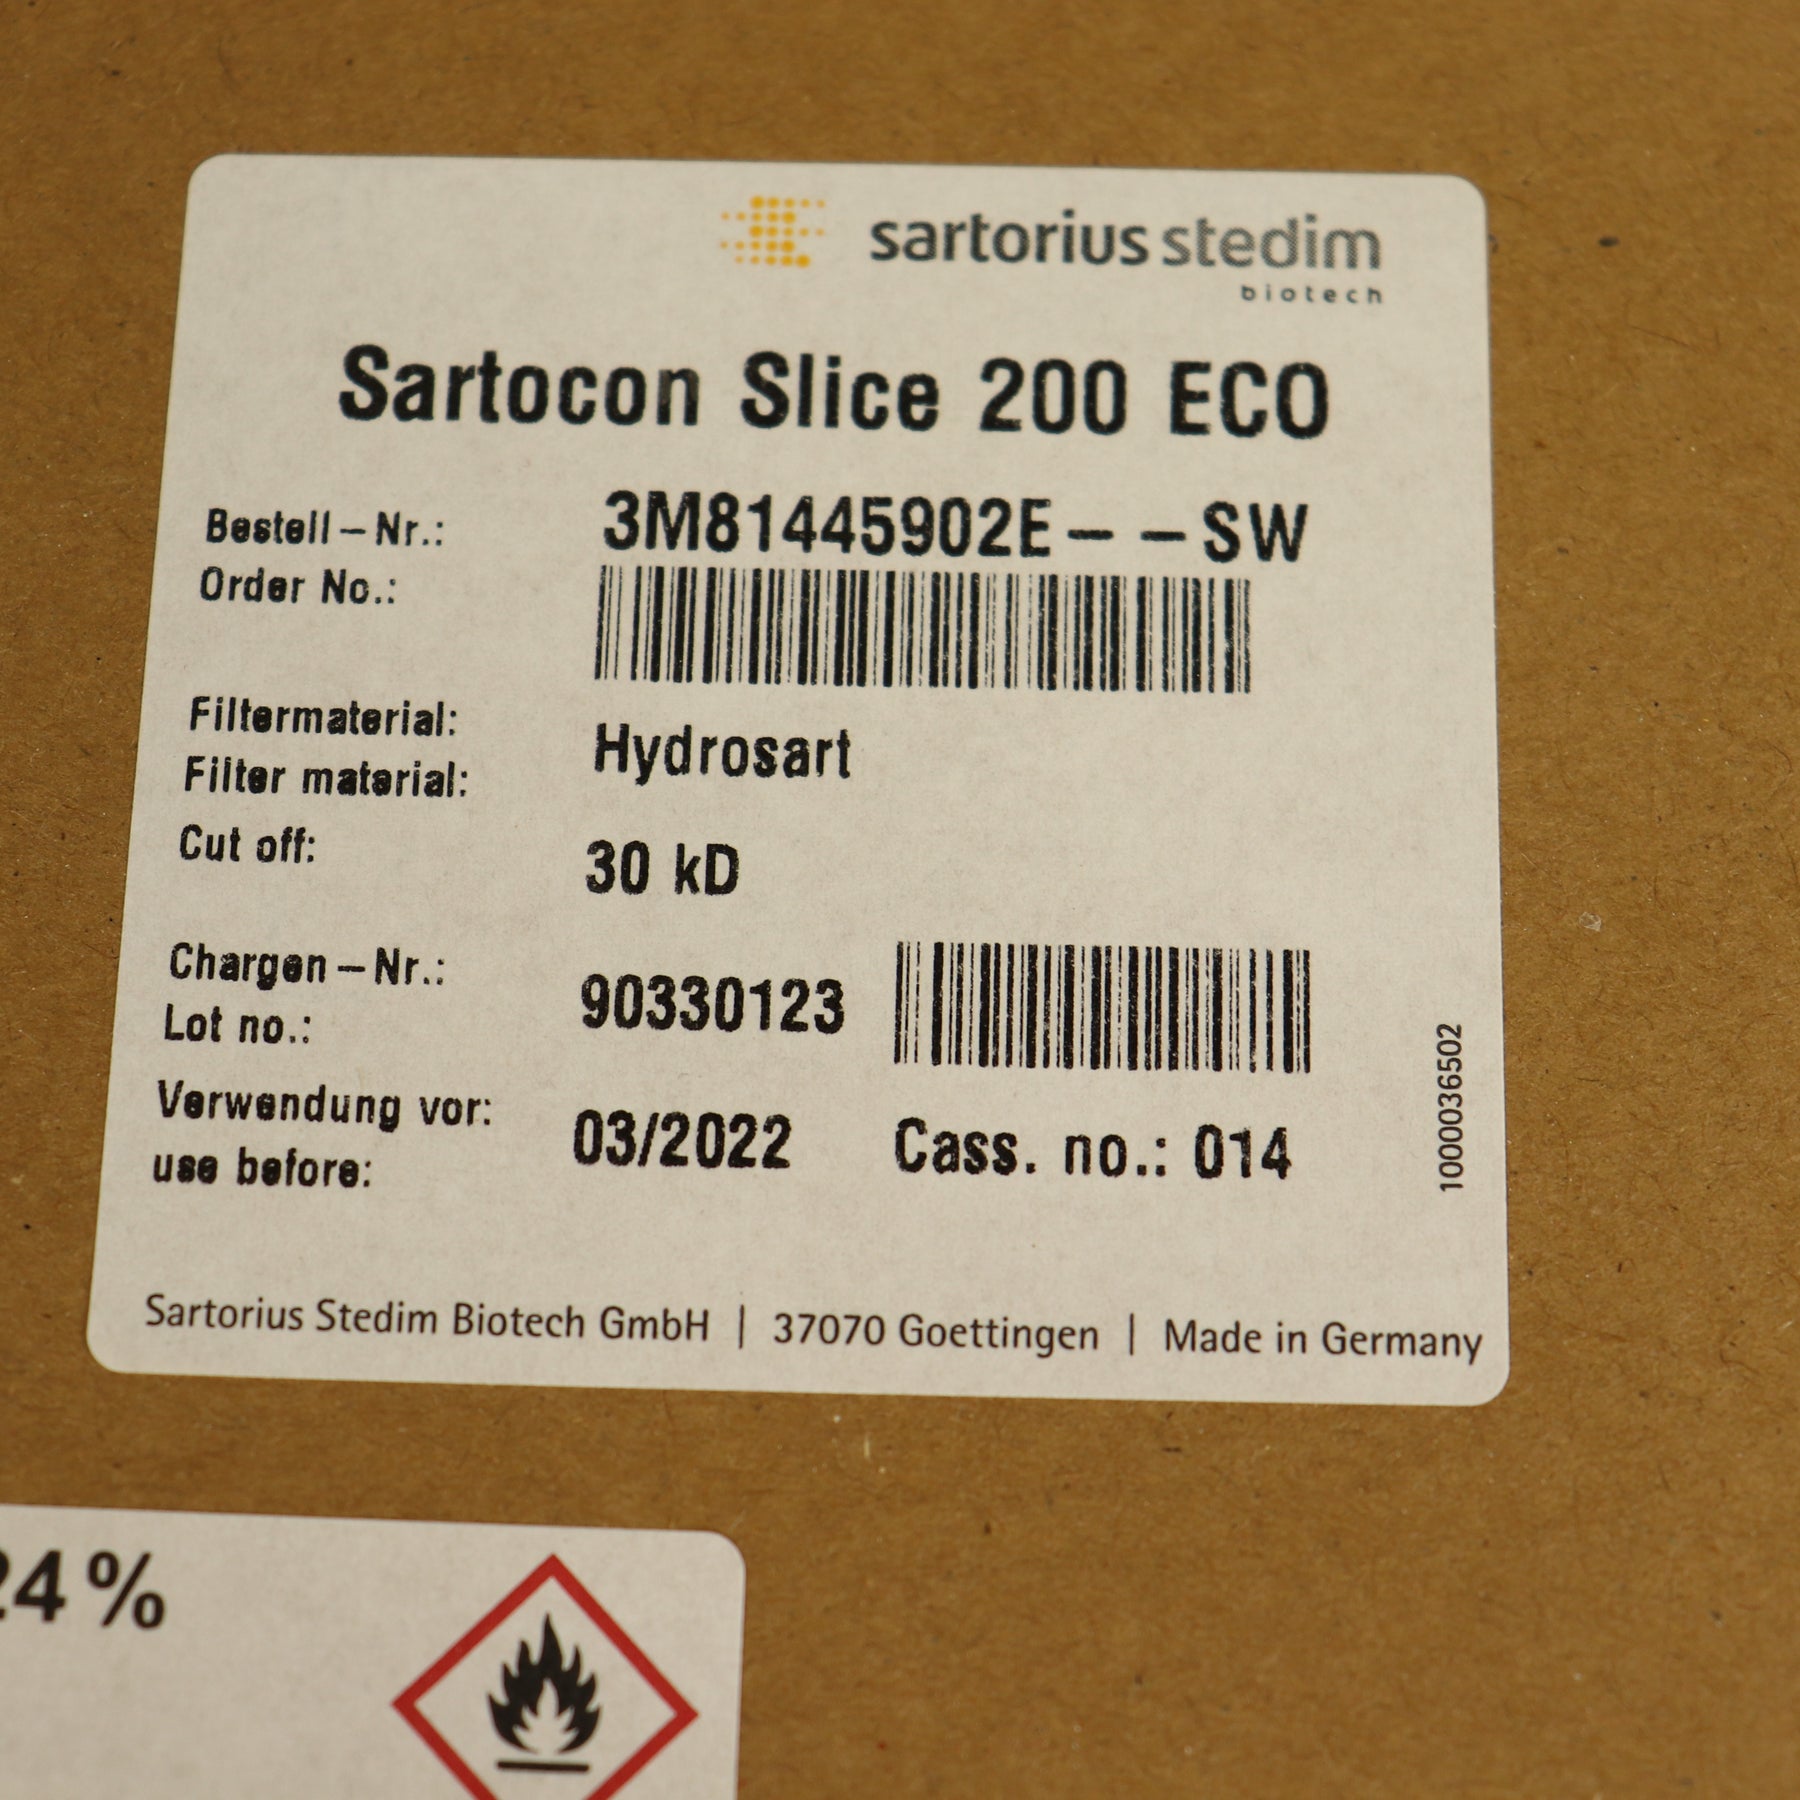 Sartorius Sartocon Slice 200 Eco Hydrosart 30kD 3M81443902E--SW